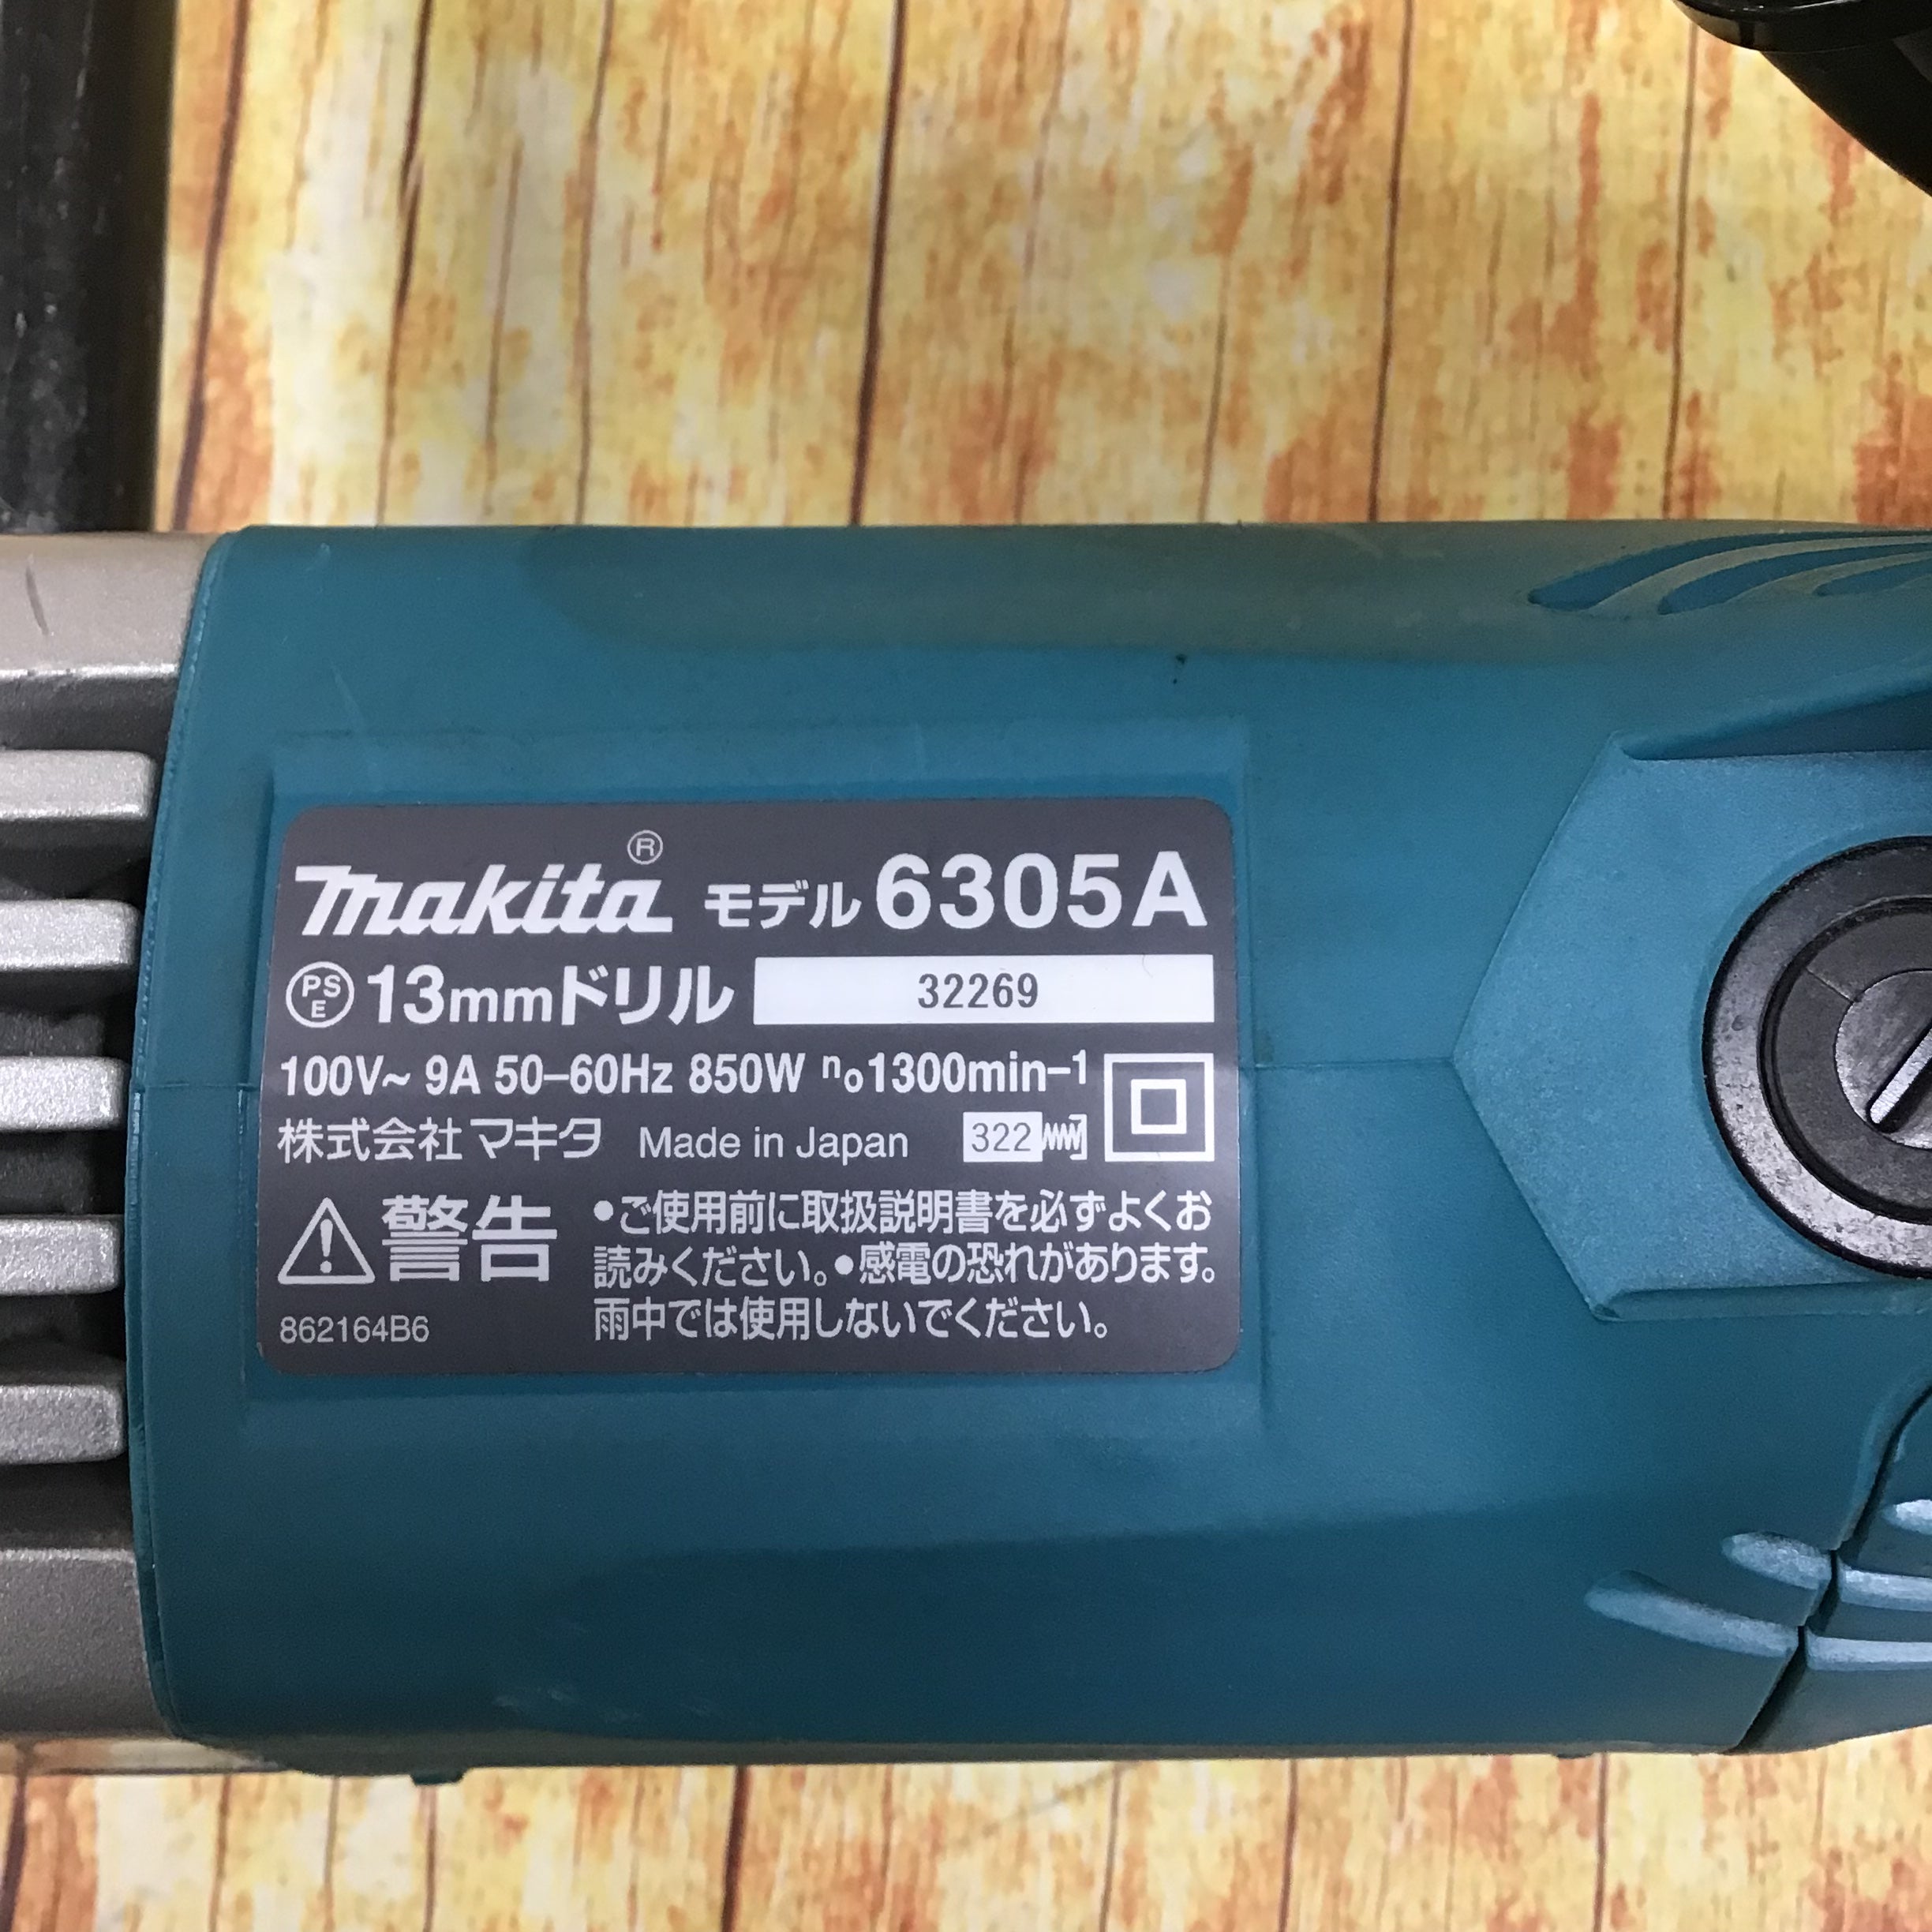 マキタ(Makita) 6305AW 13mm電気ボーラー - 2